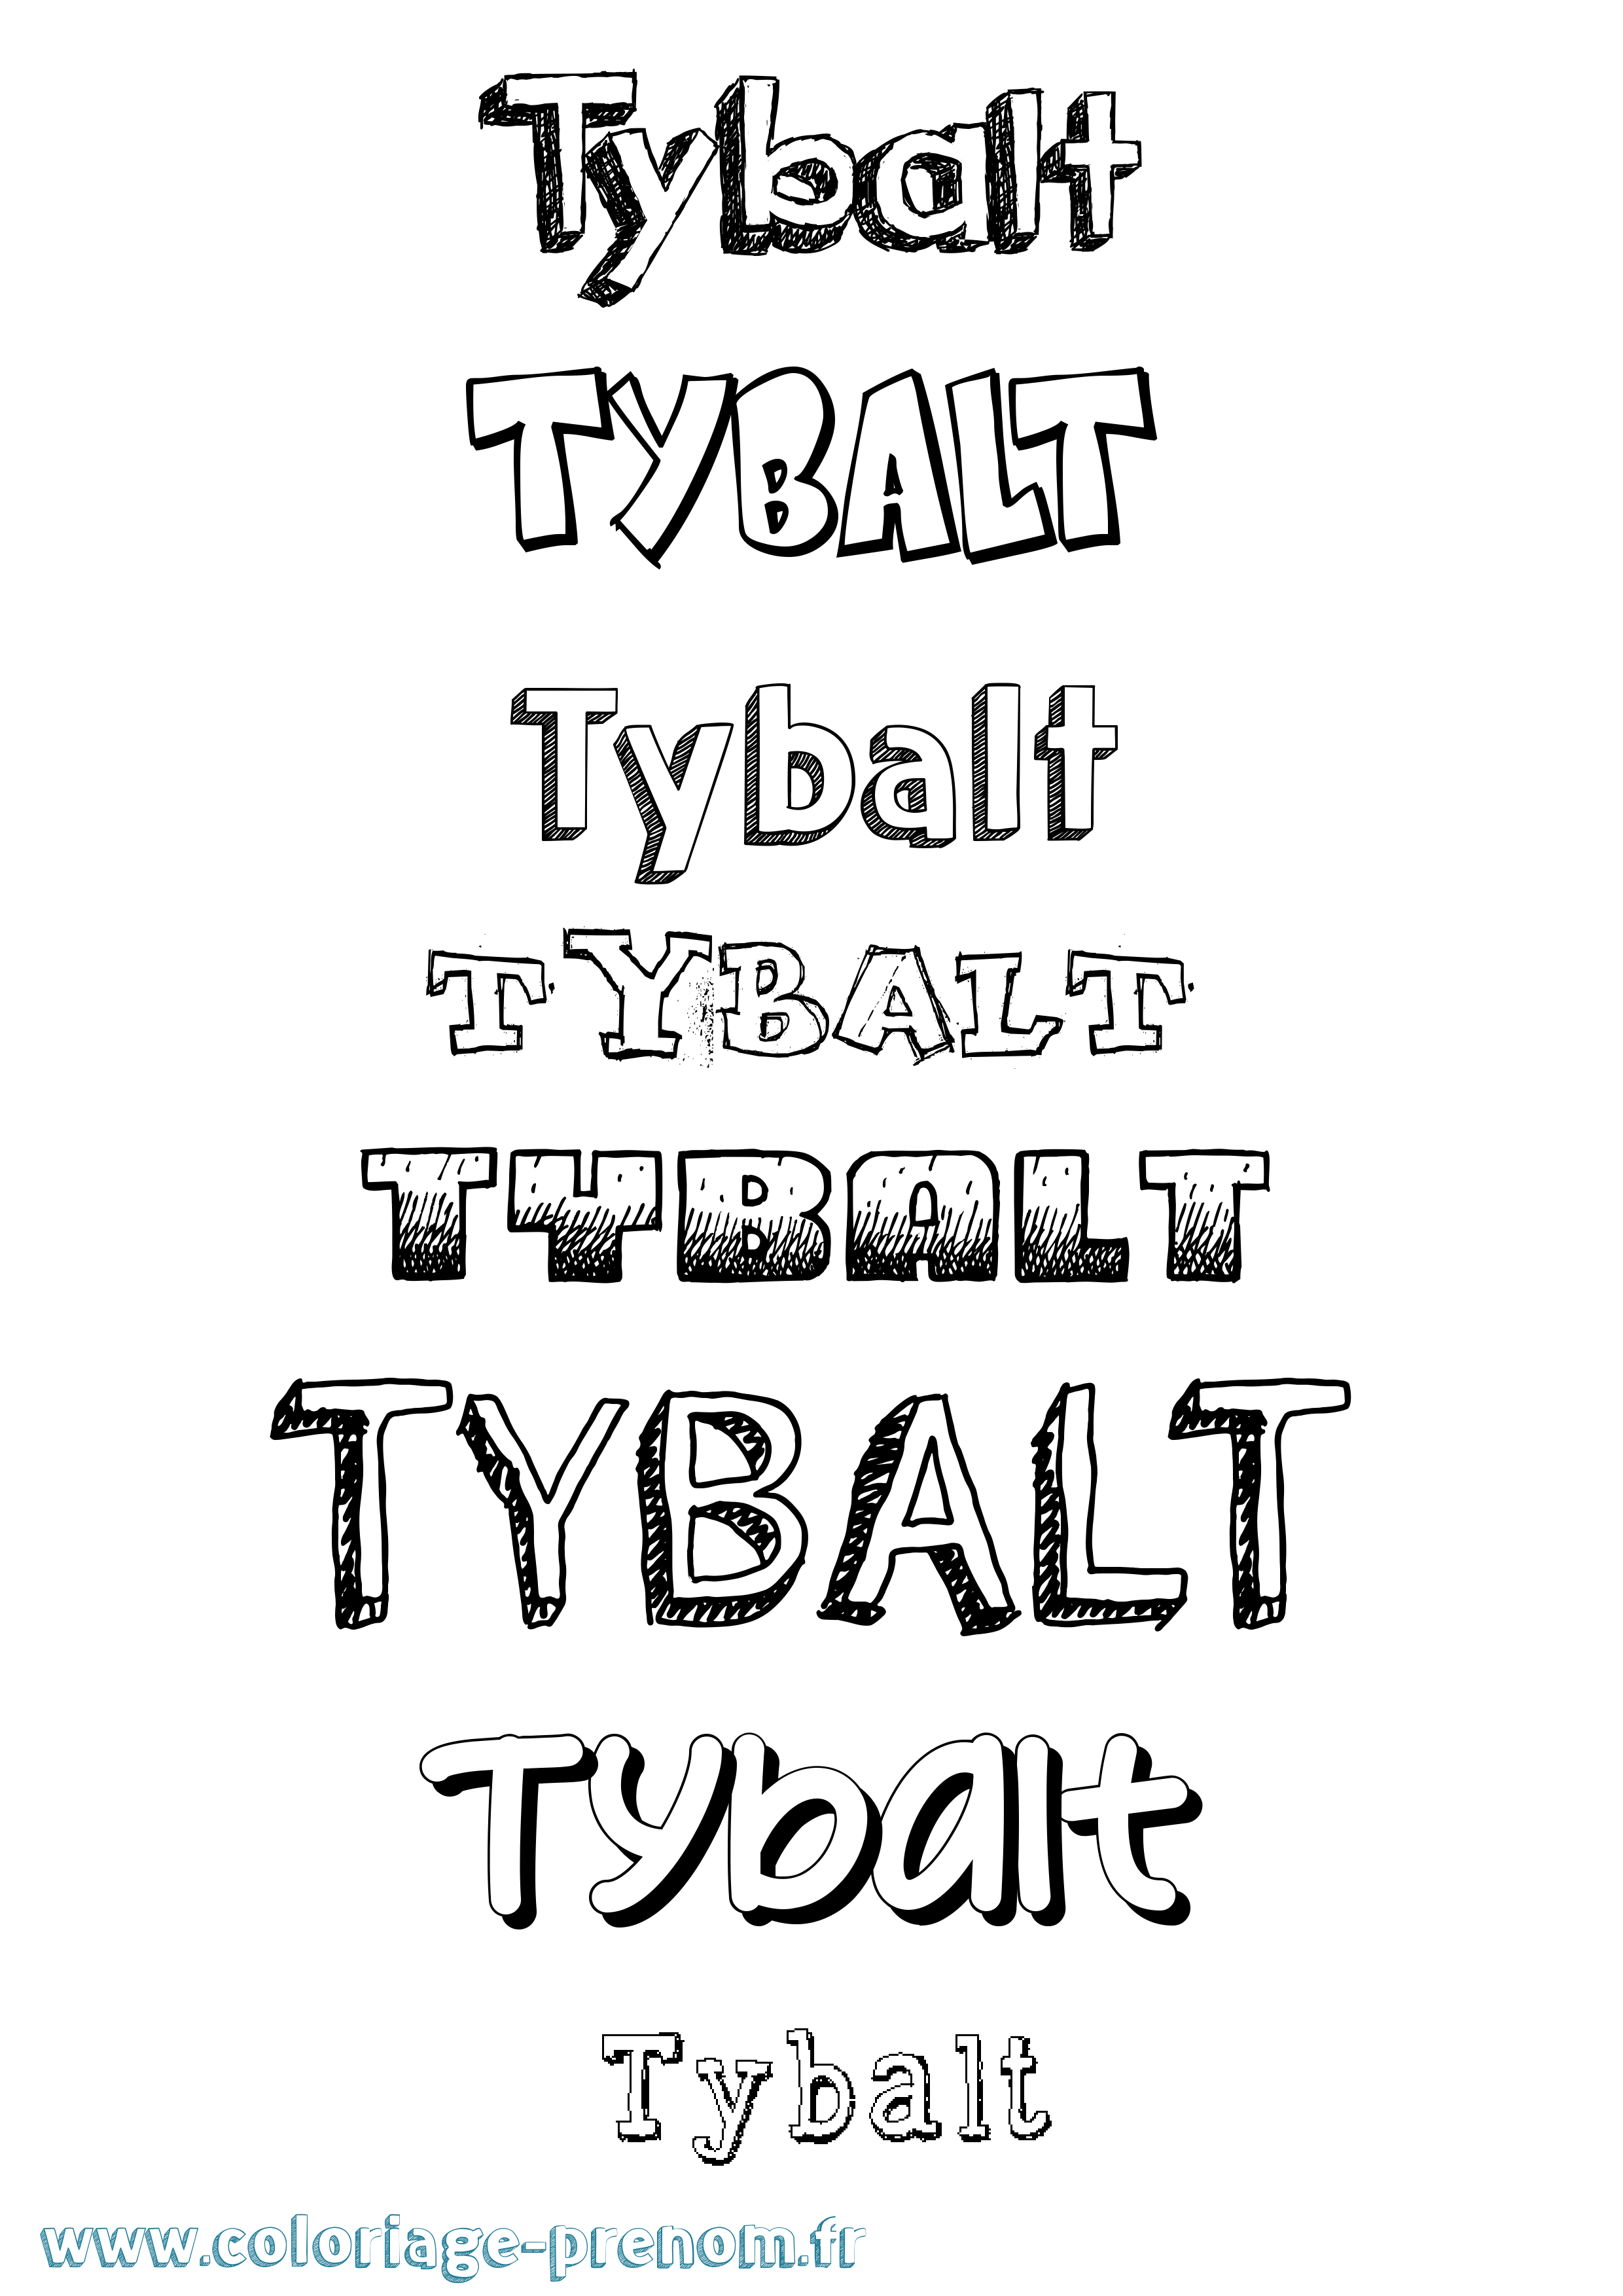 Coloriage prénom Tybalt